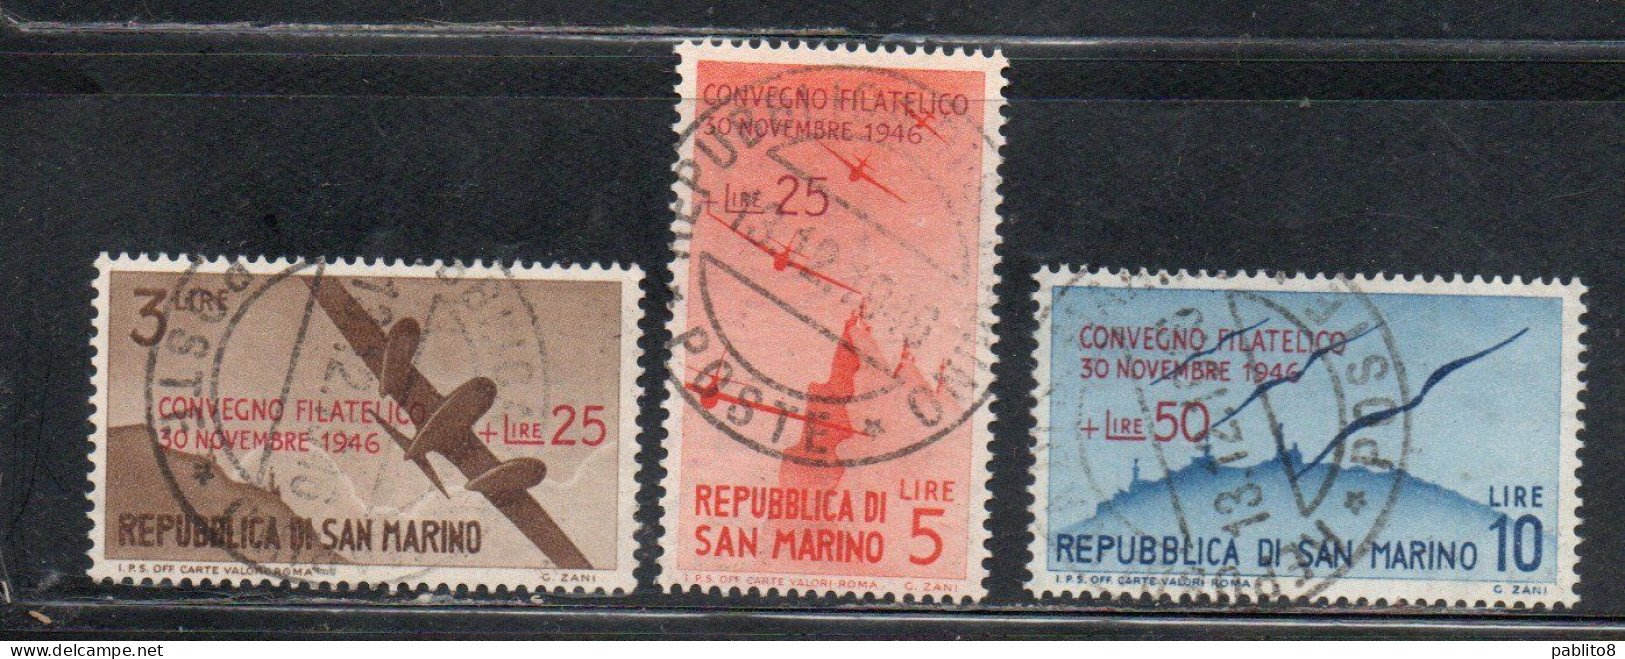 REPUBBLICA DI SAN MARINO 1946 CONVEGNO FILATELICO SERIE COMPLETA COMPLETE SET USATA USED OBLITERE' - Used Stamps